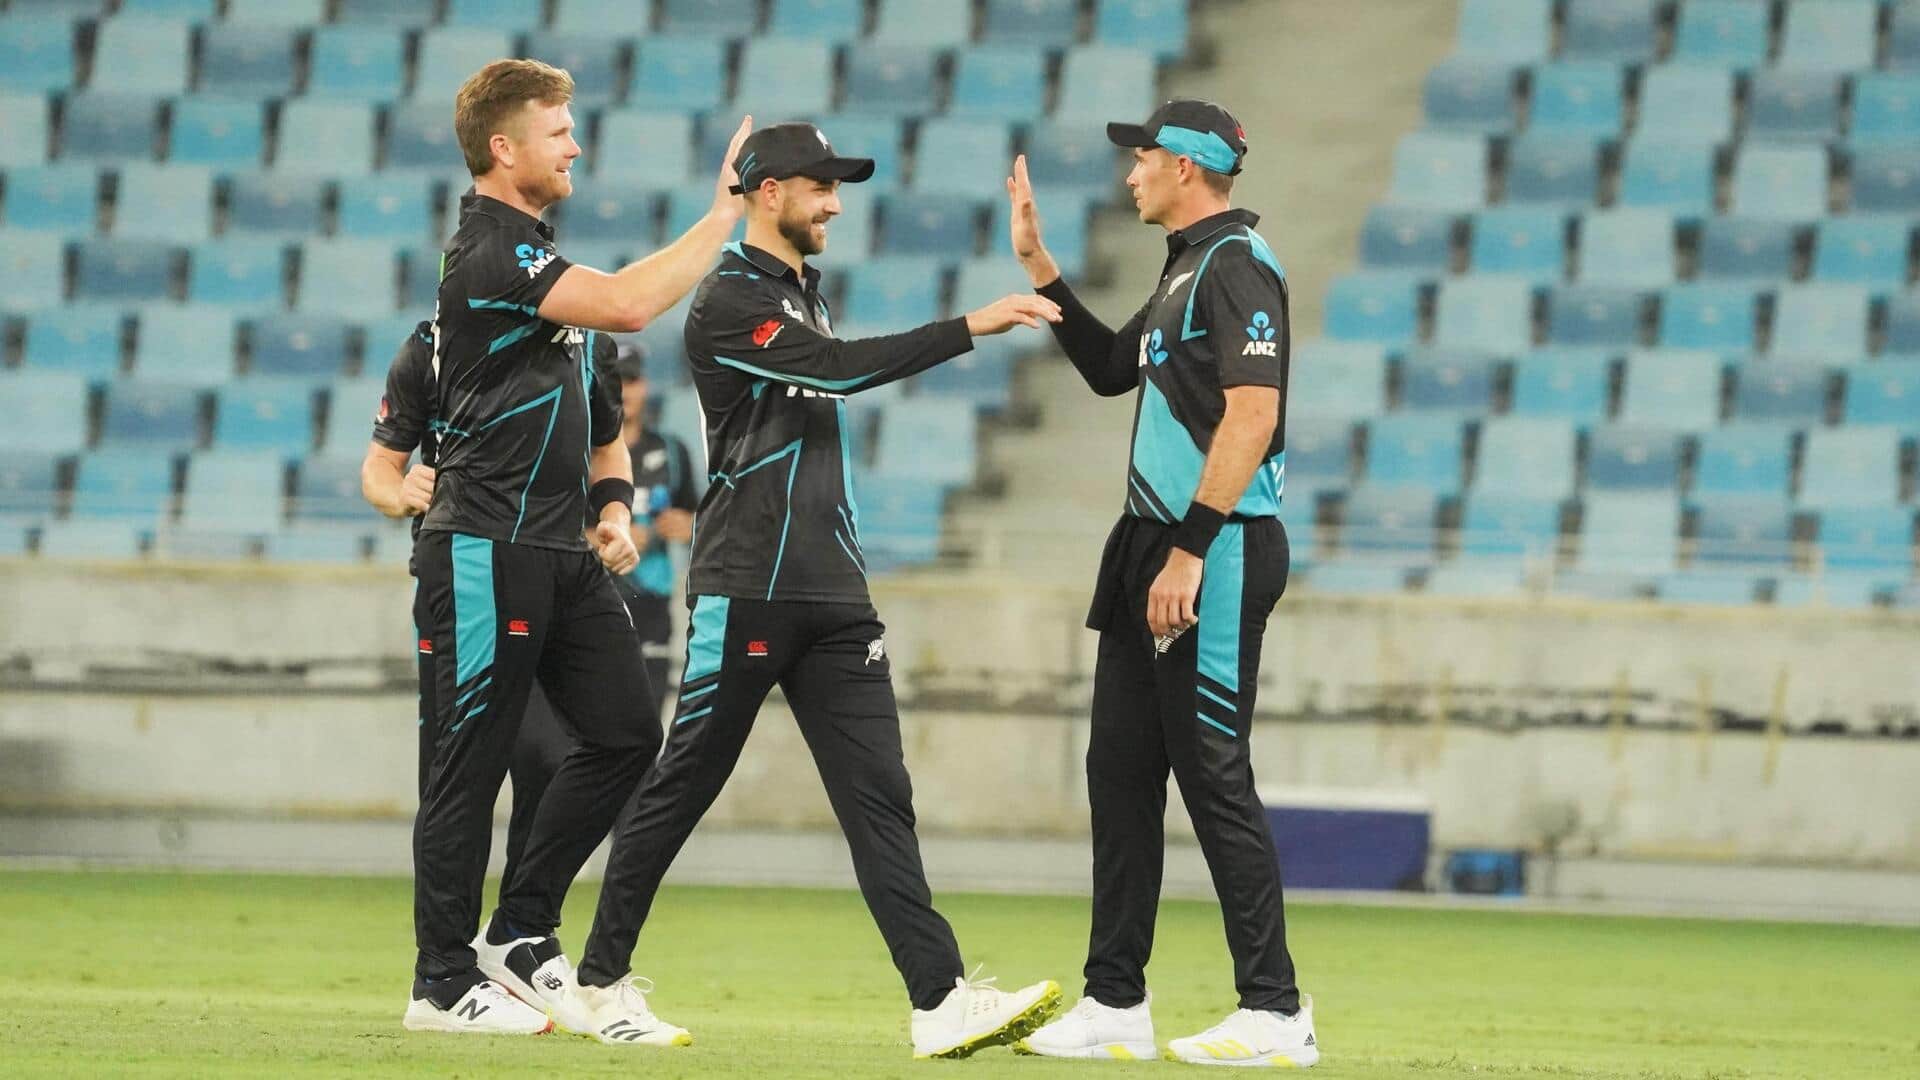 तीसरा टी-20: न्यूजीलैंड ने UAE को 32 रन से हराकर 2-1 से जीती सीरीज